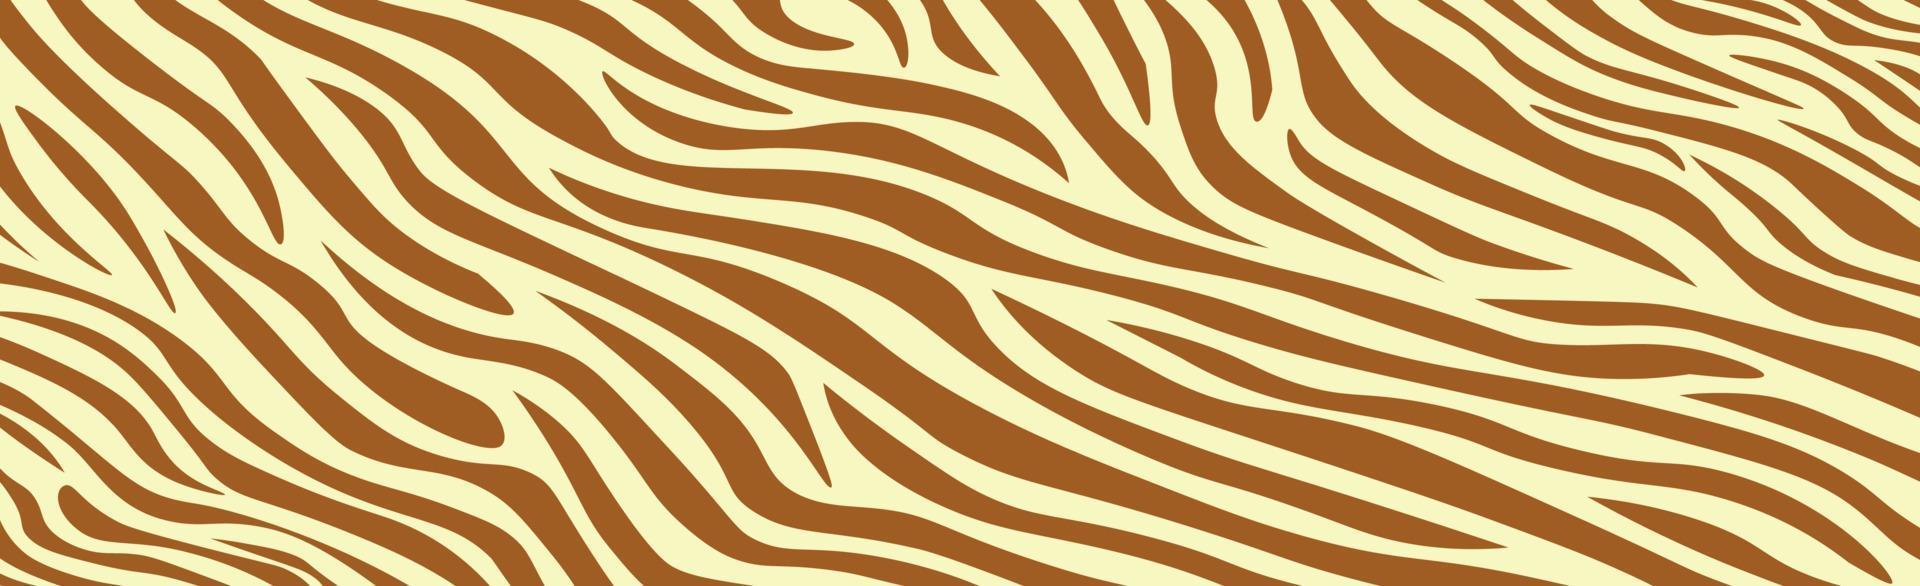 Panorama-Textur Zebrahaut Satz von chaotischen Linien - Vektor